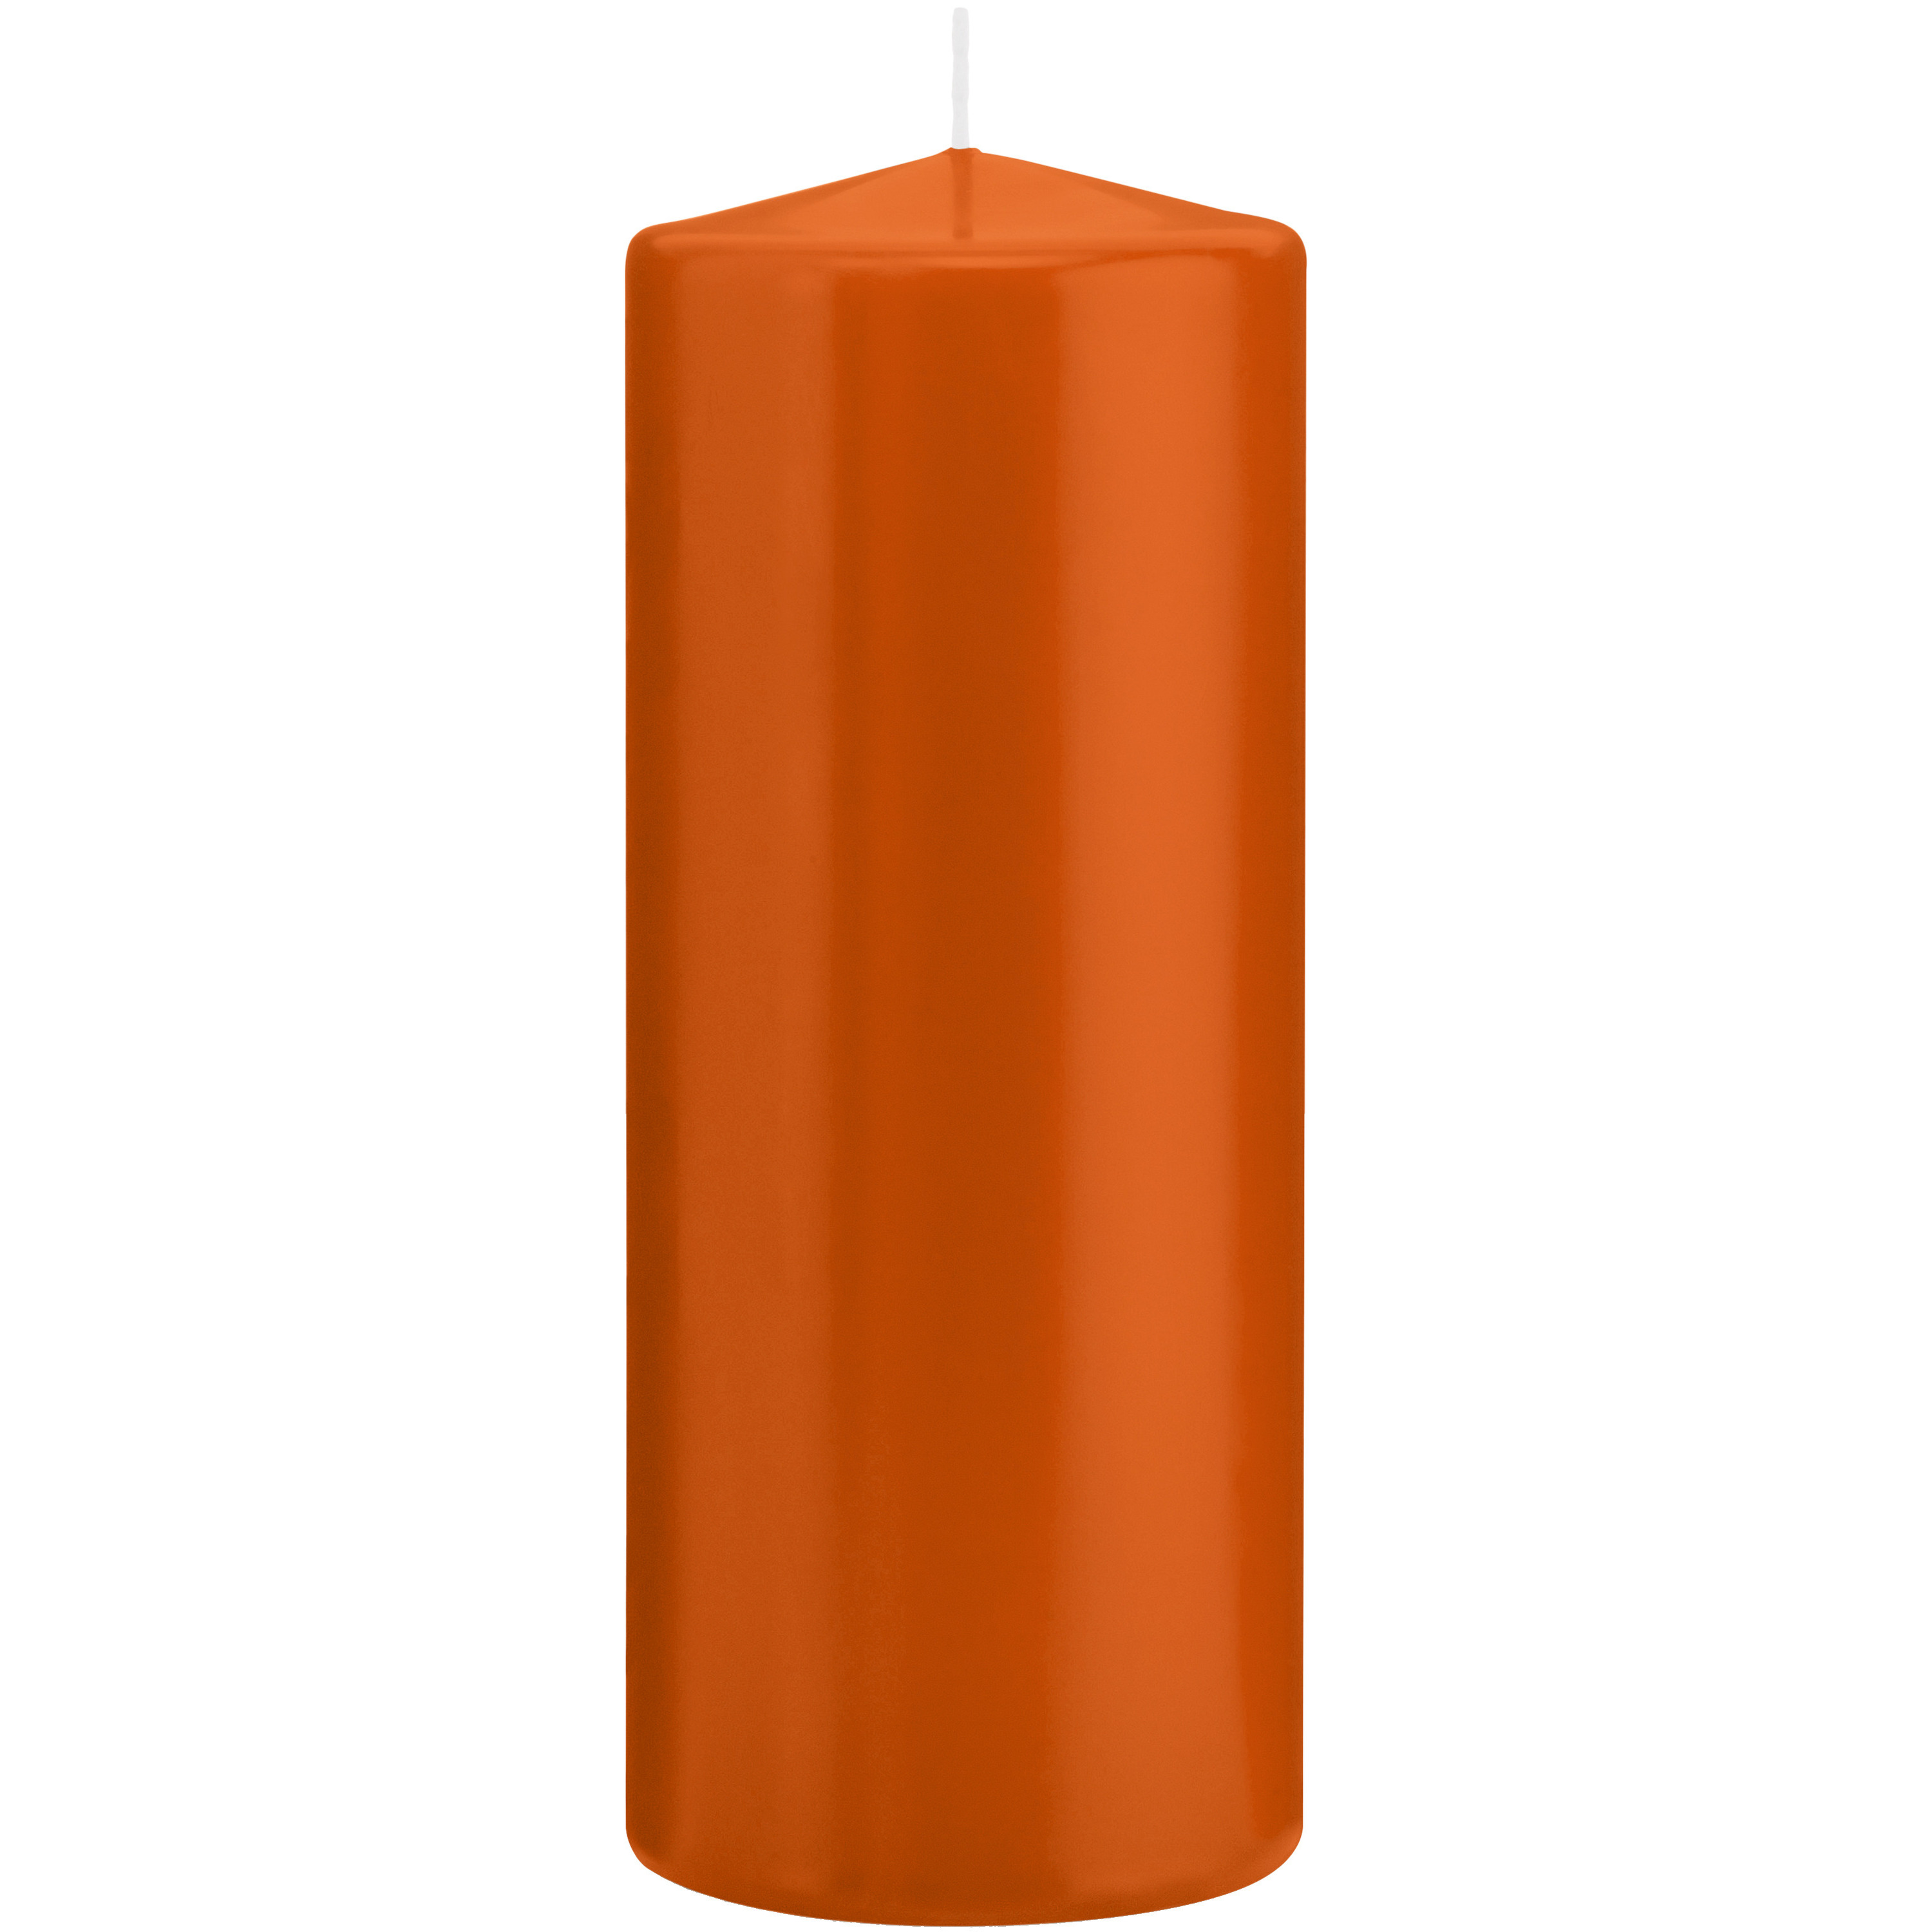 1x Oranje woondecoratie kaarsen 8 x 20 cm 119 branduren